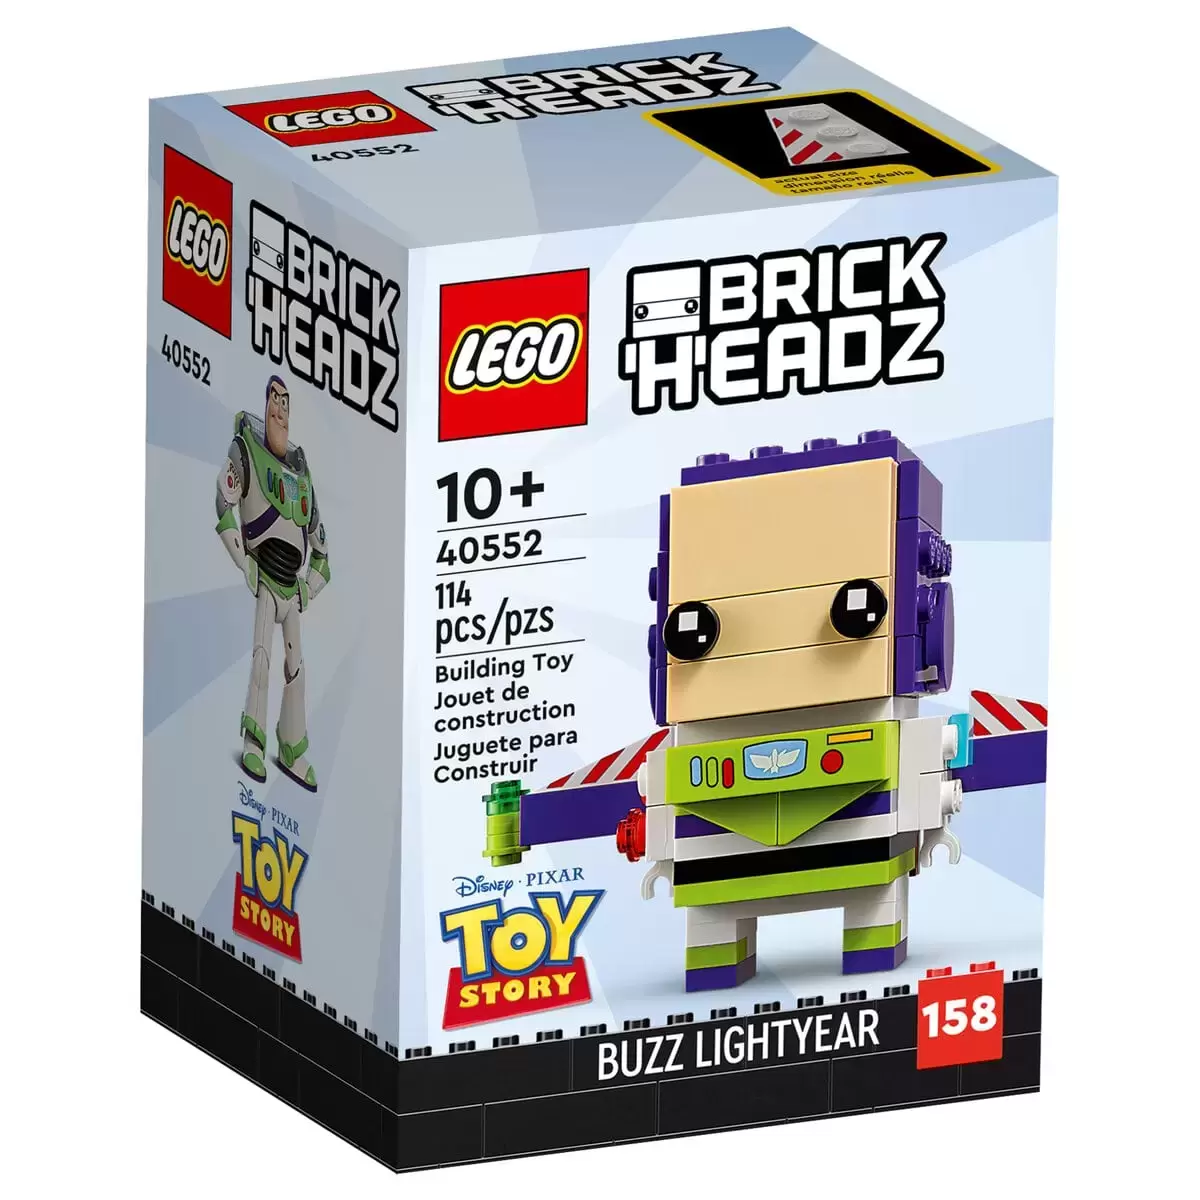 LEGO BrickHeadz - 158 - Buzz Lightyear